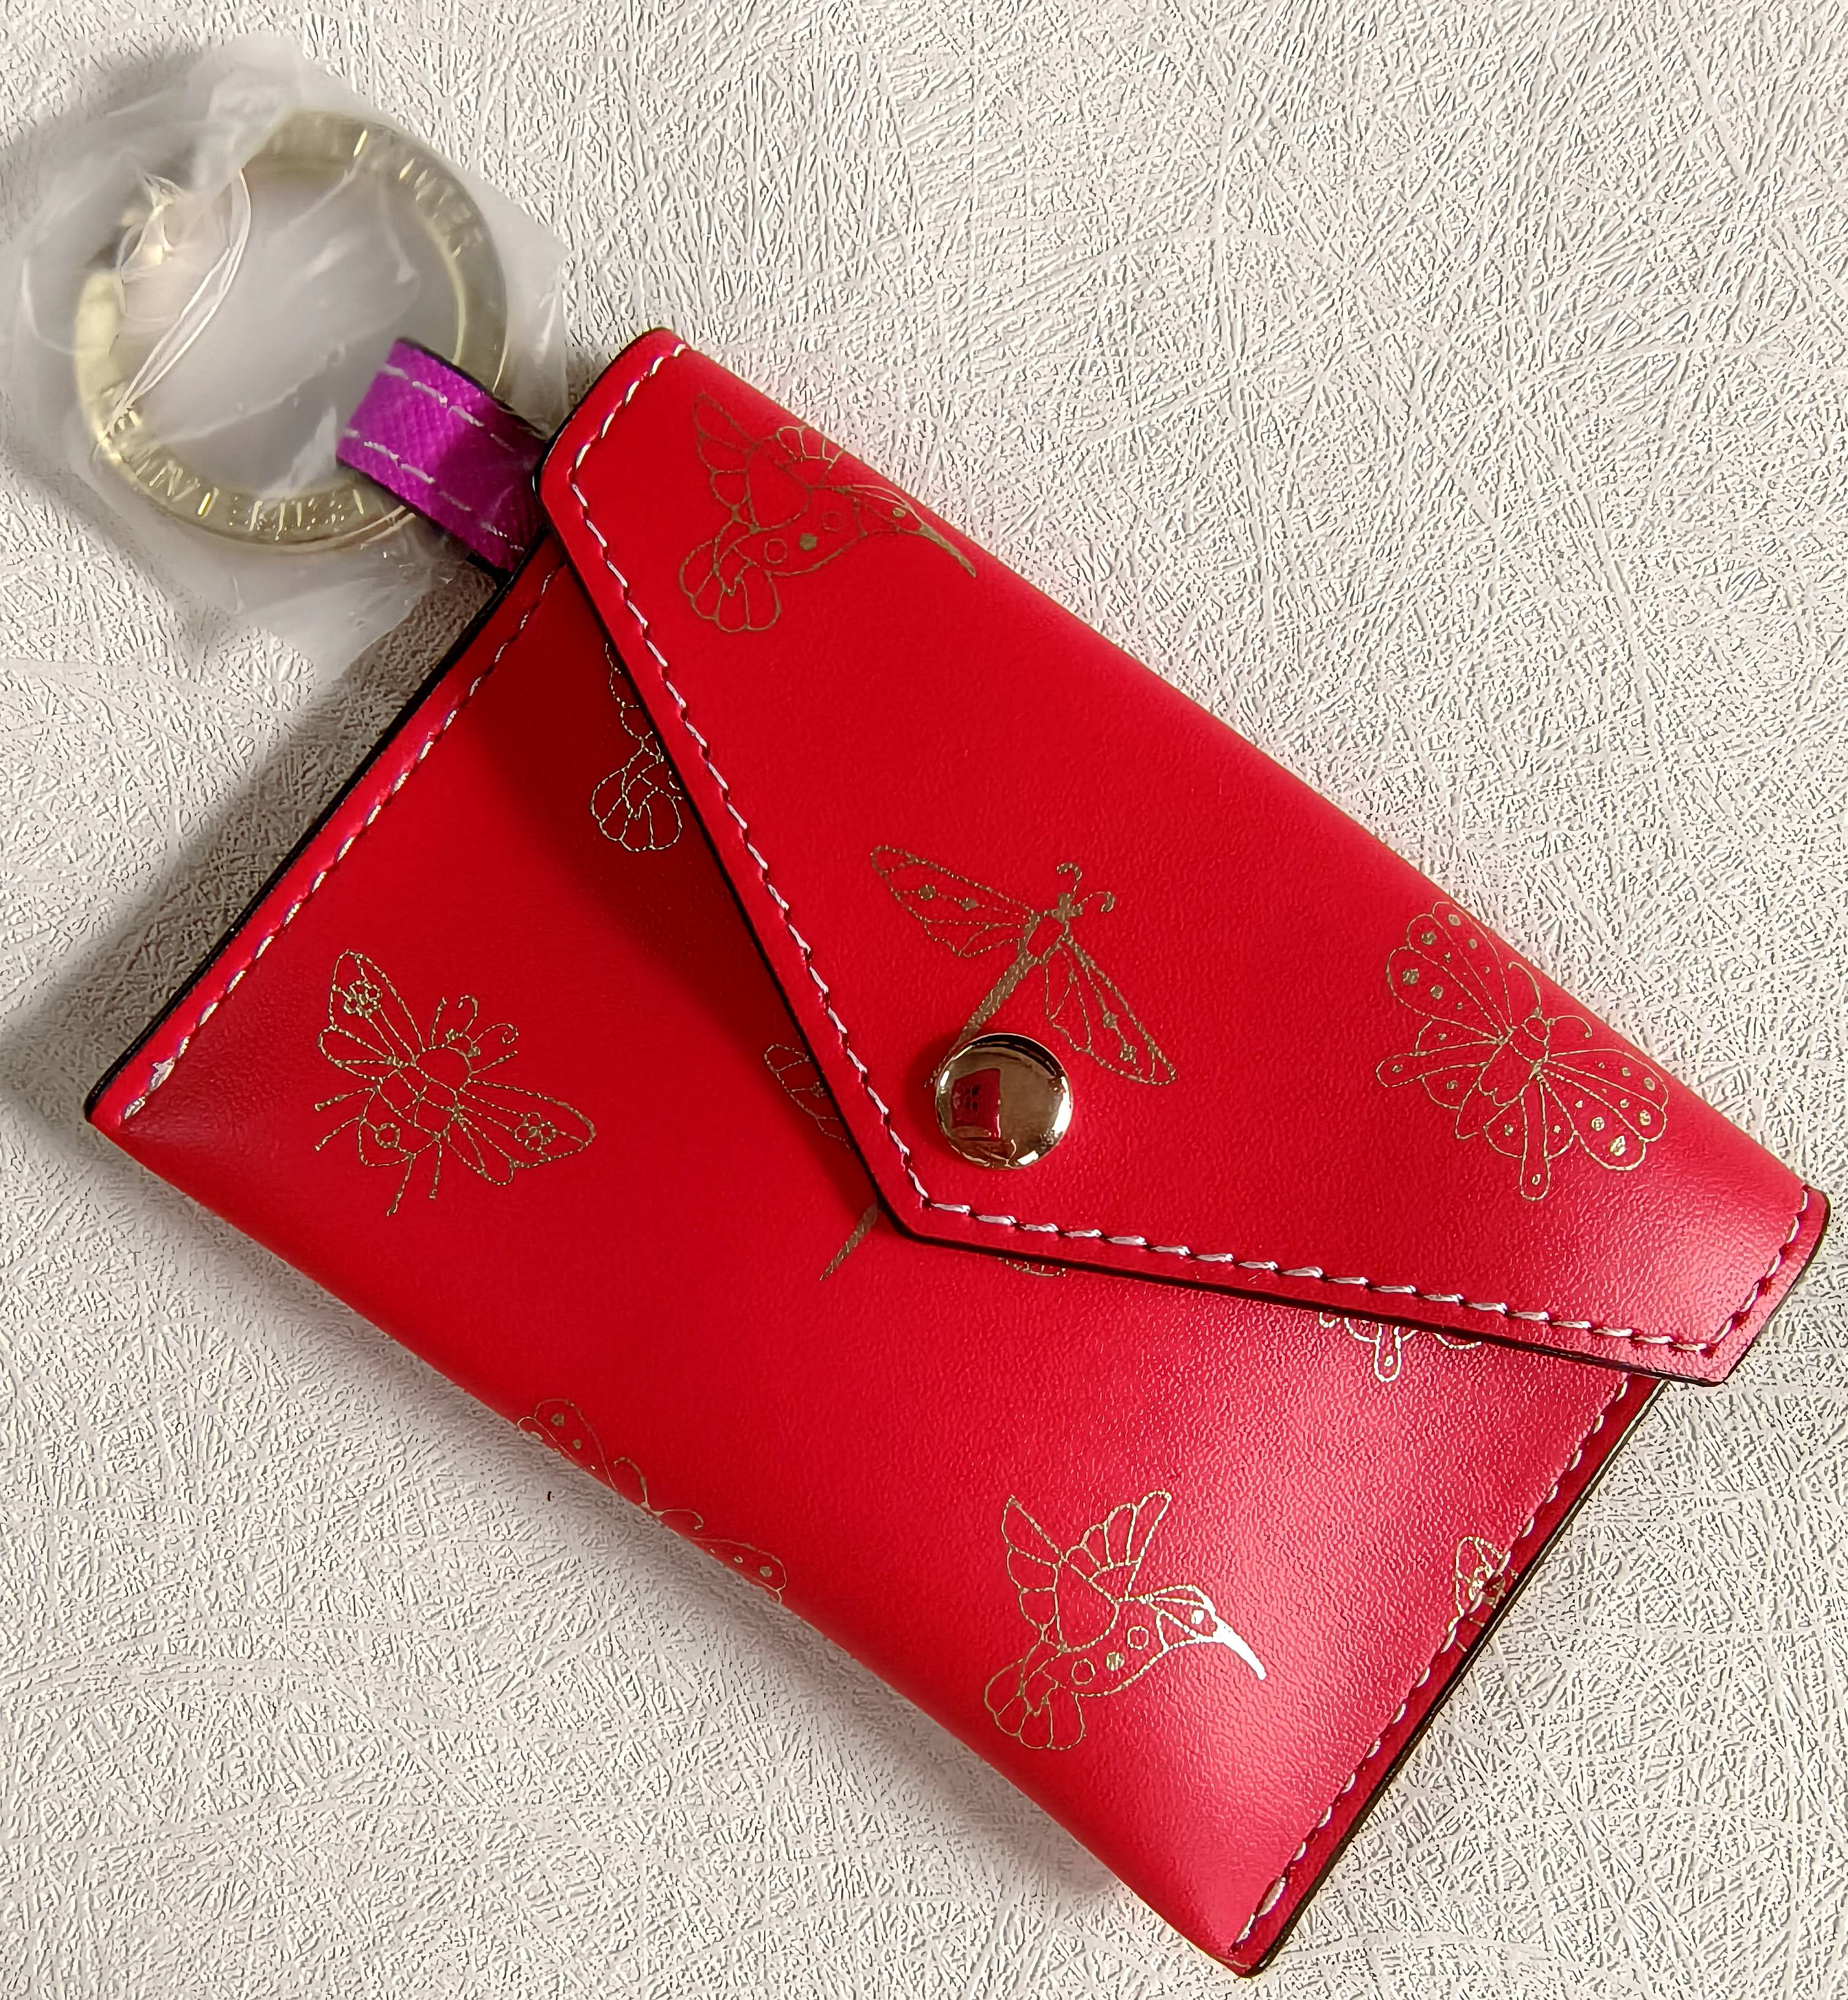 雅诗兰黛 红色蜜蜂PU钥匙包 零钱包手拎手拿包卡包收纳简约纯色